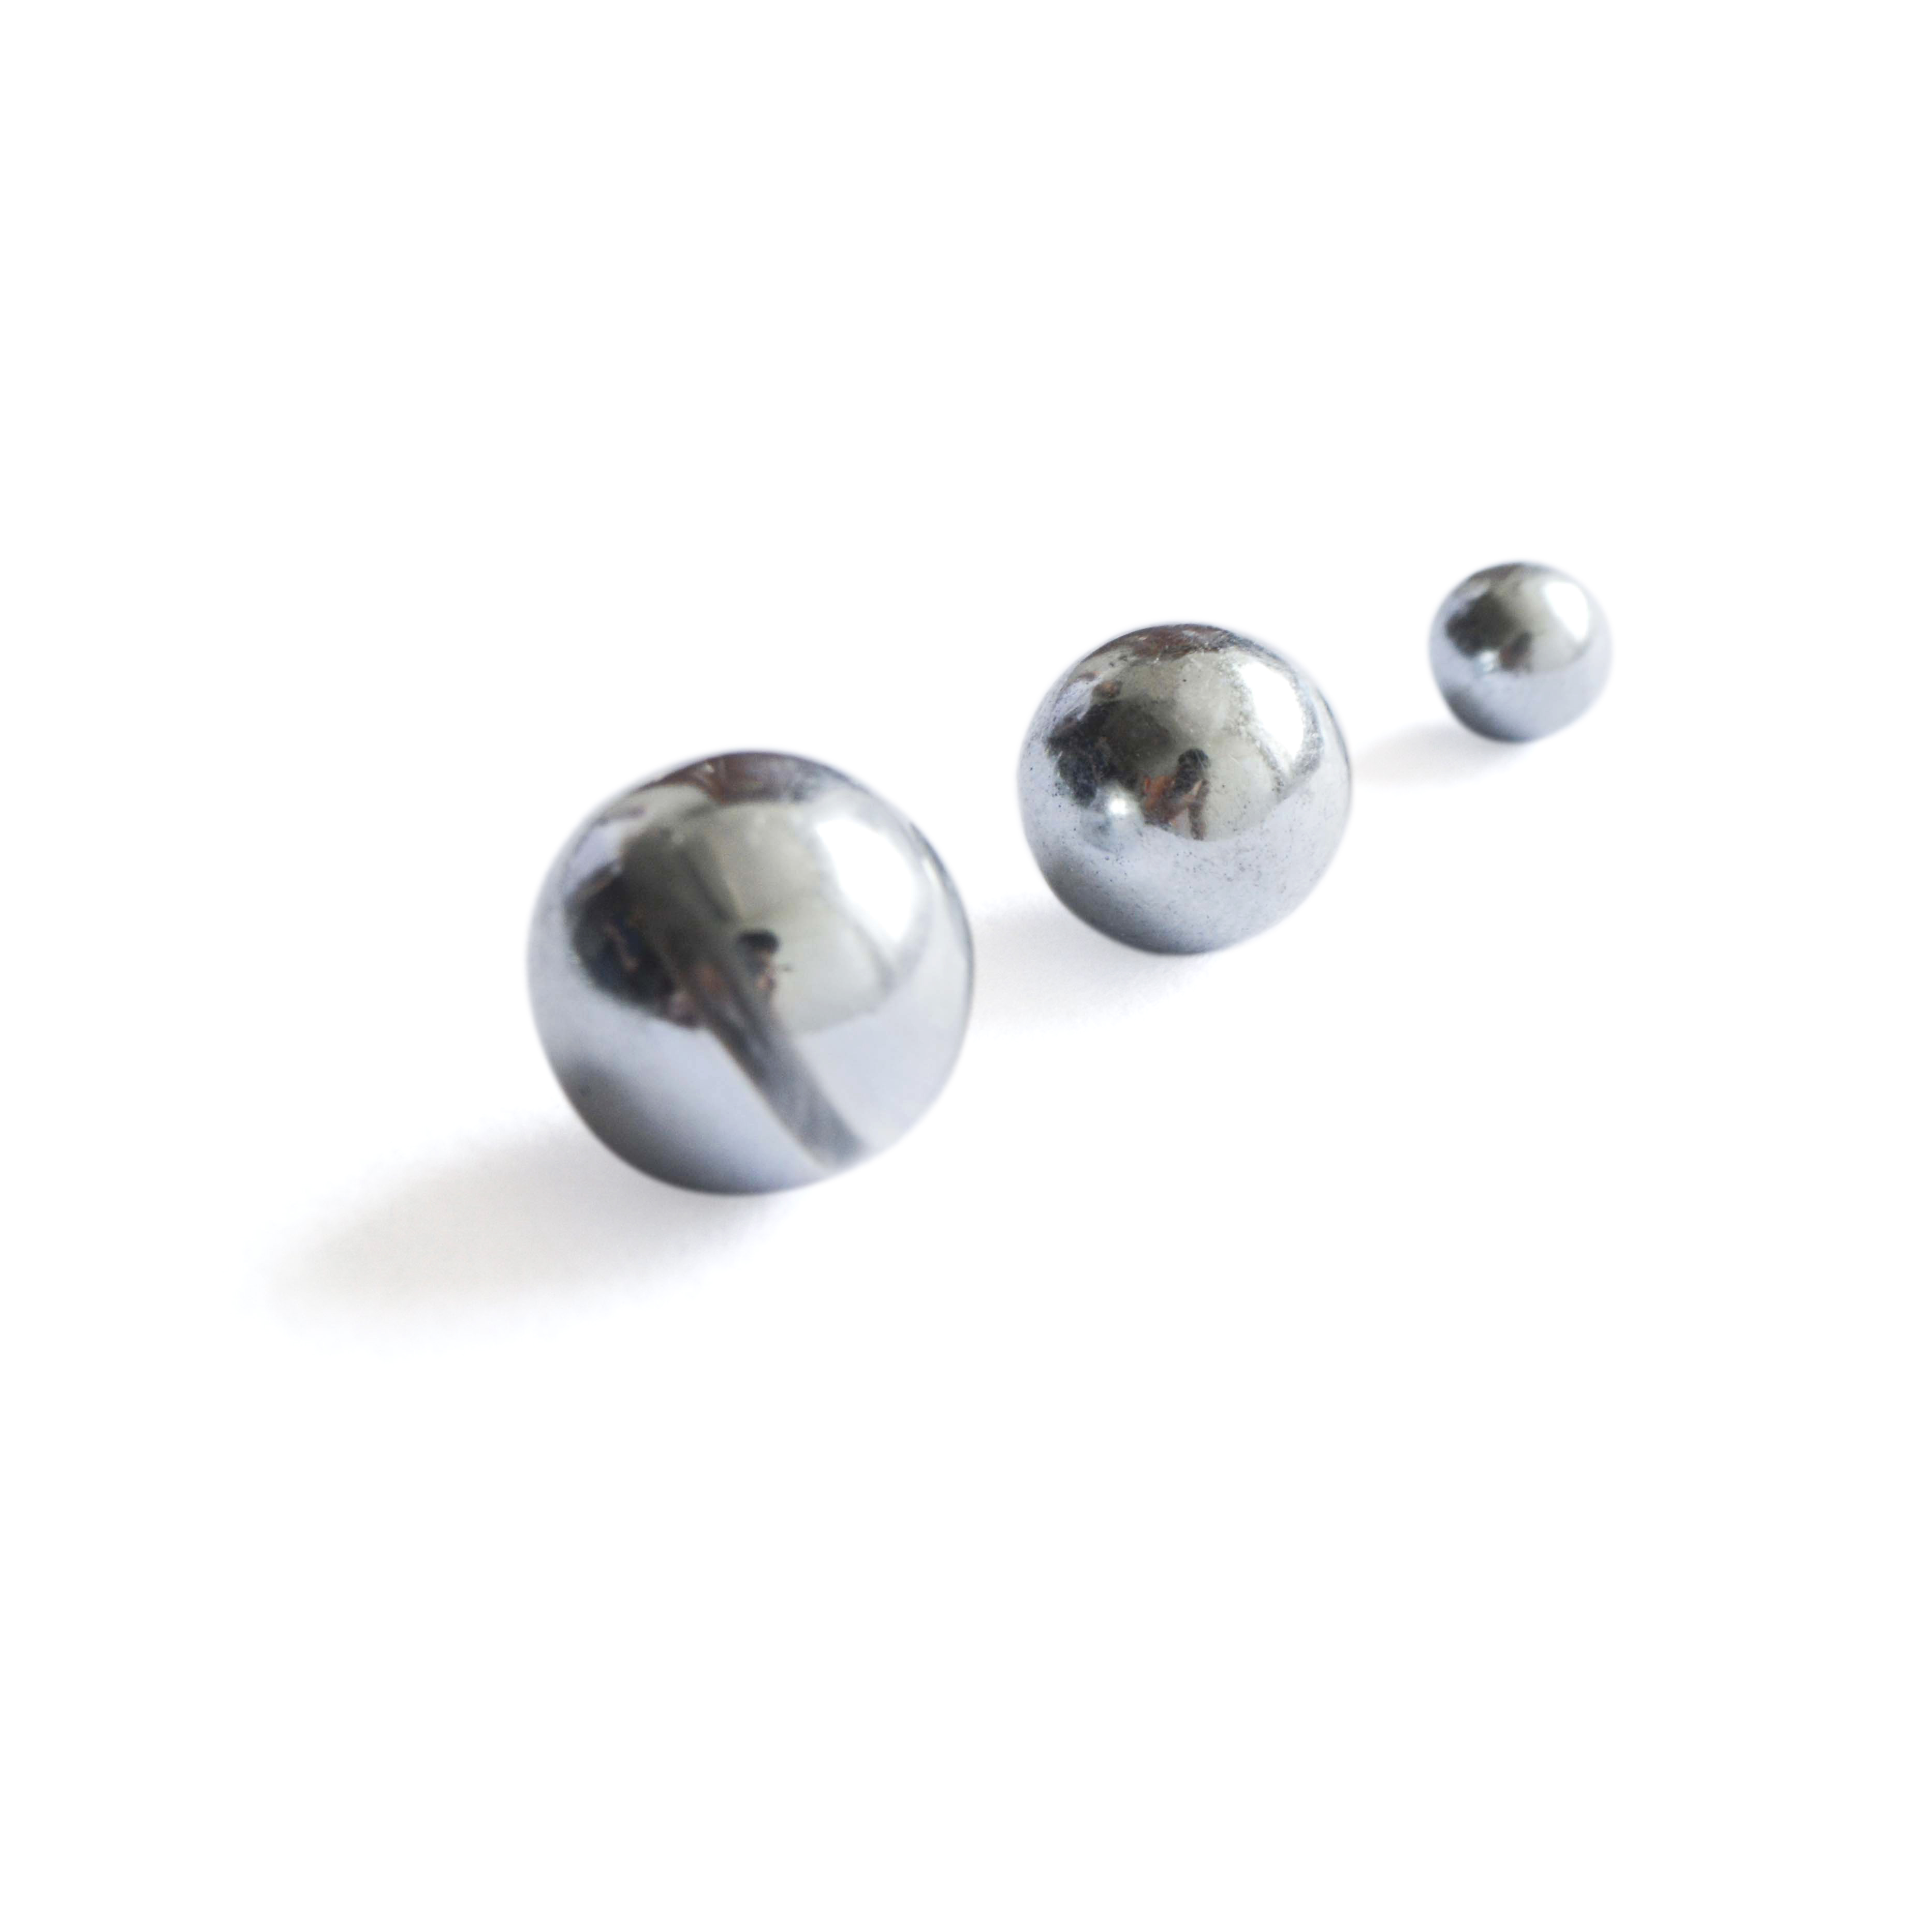 广东球形磁铁价格 球形磁铁定制 球形钕铁硼磁铁生产厂家图片